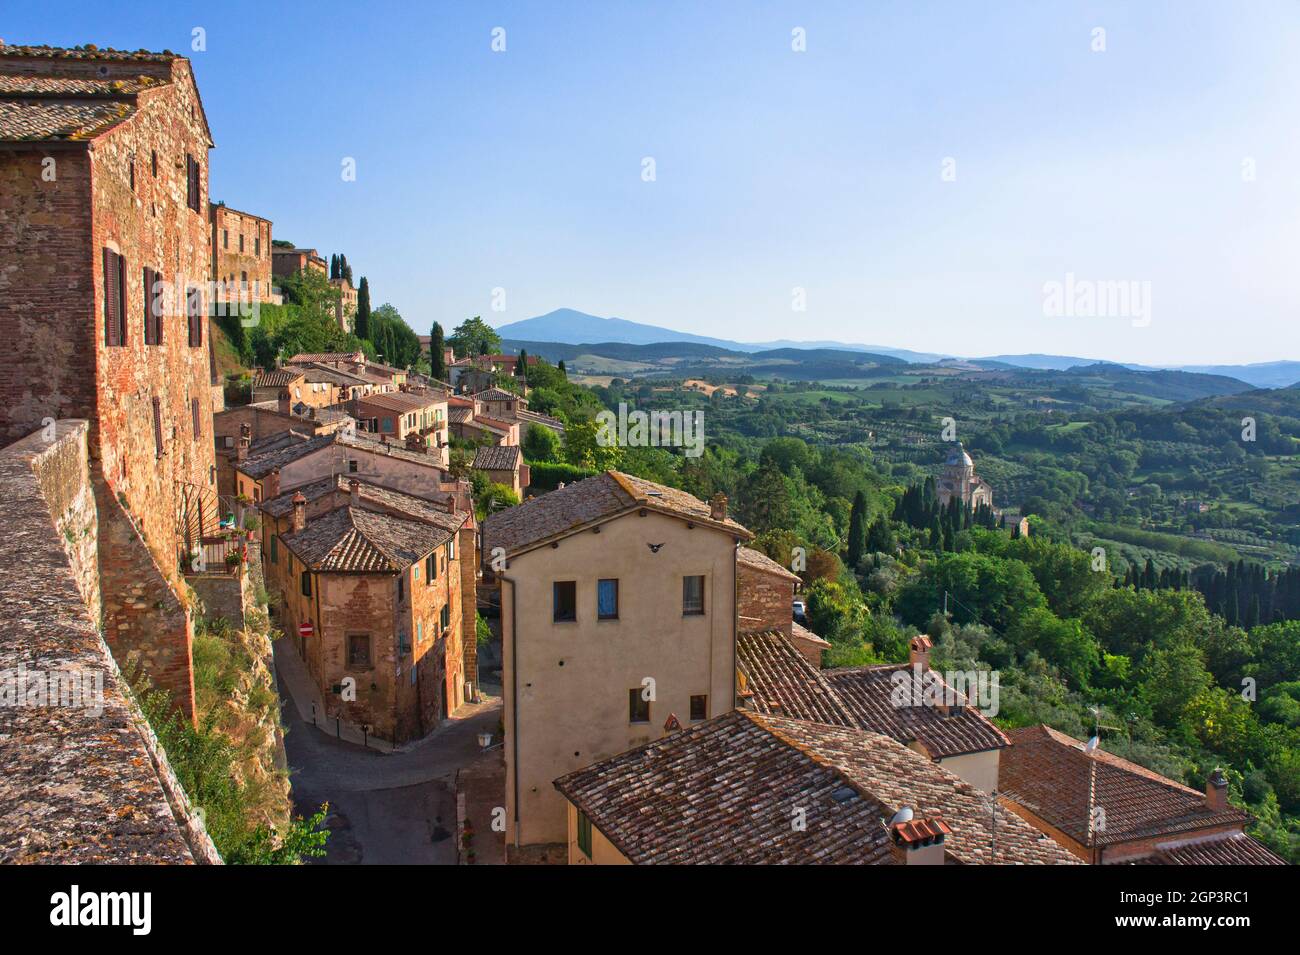 Montepulciano in Toscana, vista panoramica della città vecchia, paesaggio di campagna toscana, Italia, Europa Foto Stock